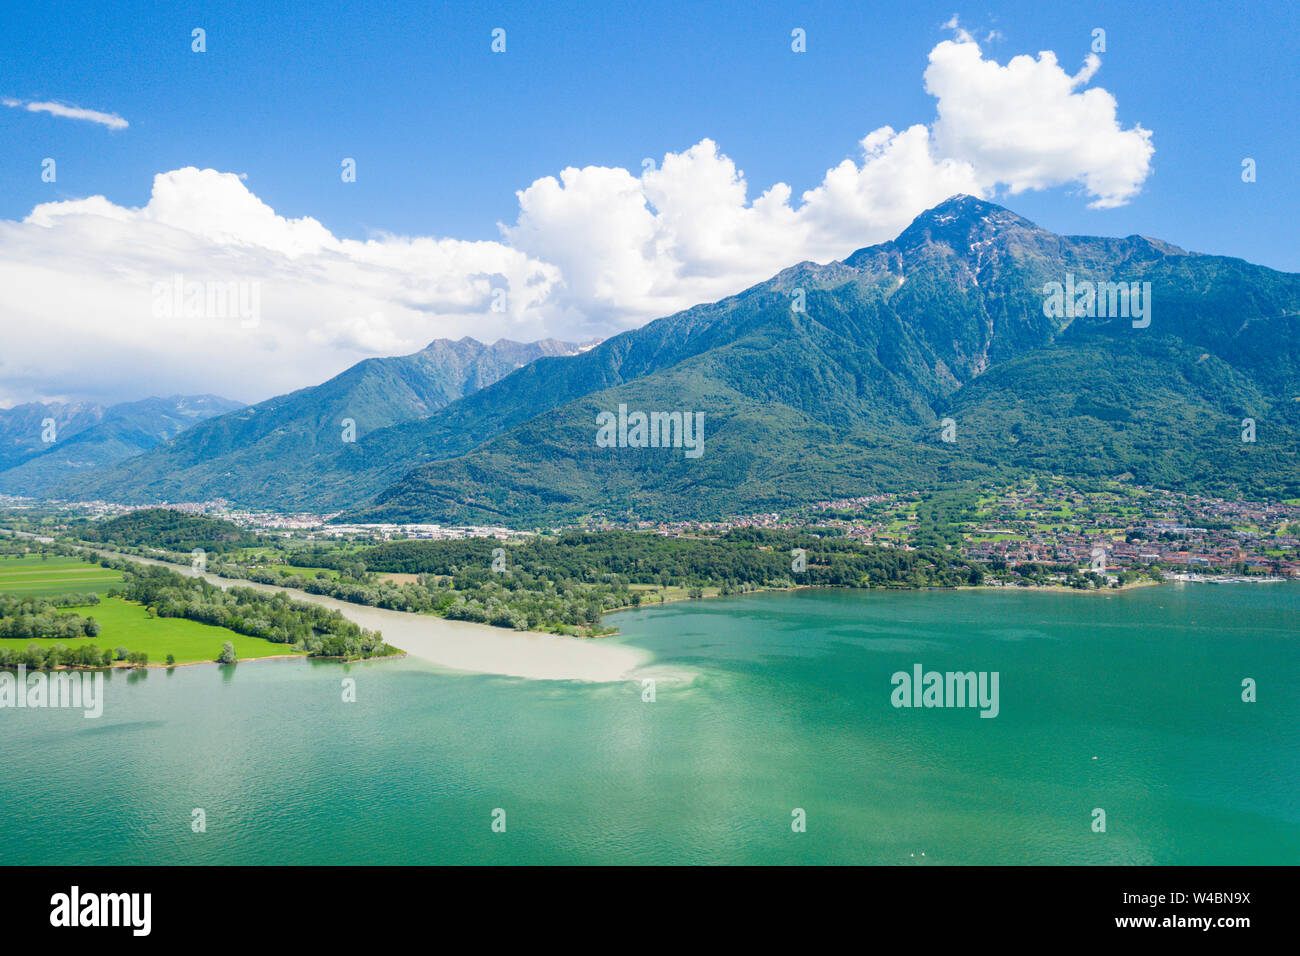 Vue aérienne du fleuve Adda qui coule dans le lac de Côme et Monte Legnone en arrière-plan, Trivio di Fuentes, Valtellina, Lombardie, Italie Banque D'Images